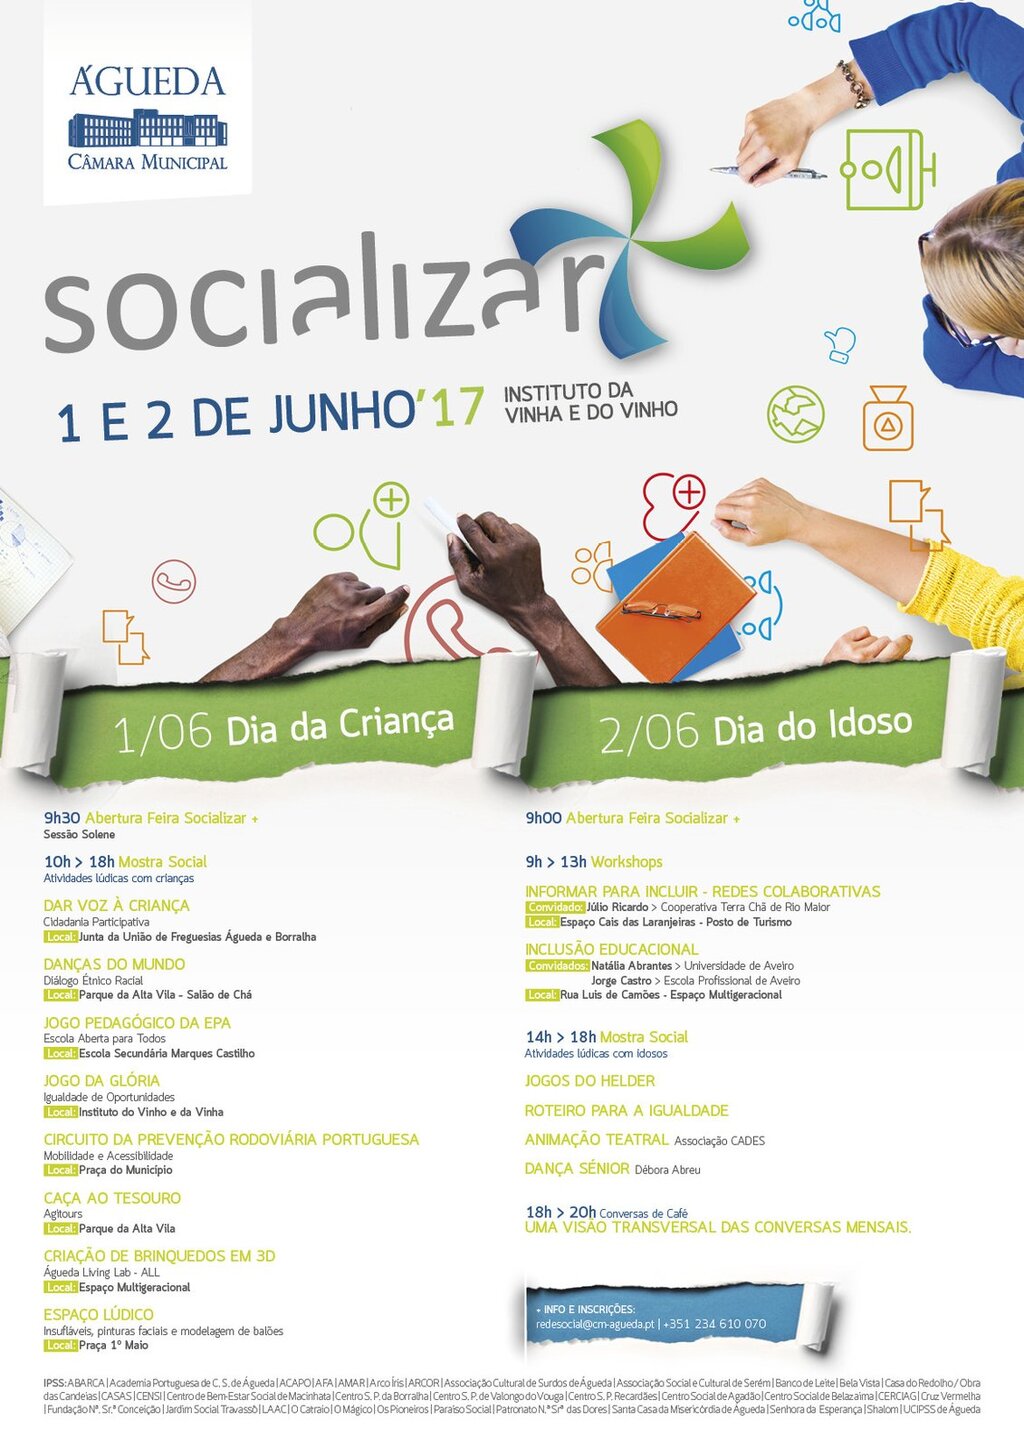 Socializar + 2017 :: 1 a 2 de junho